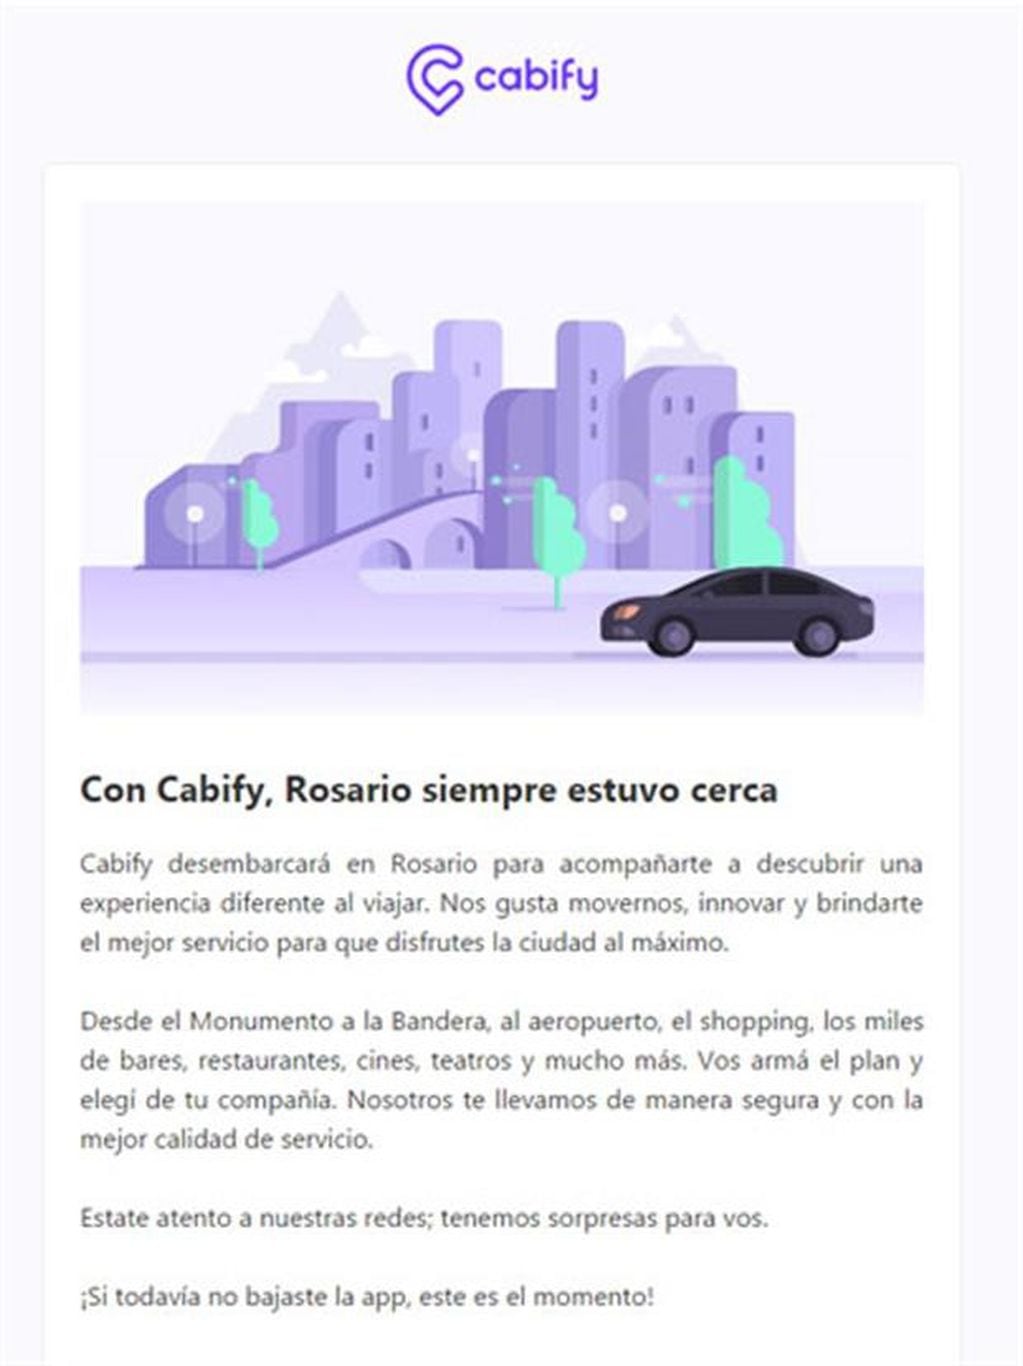 Cabify anunció su desembarco en Rosario